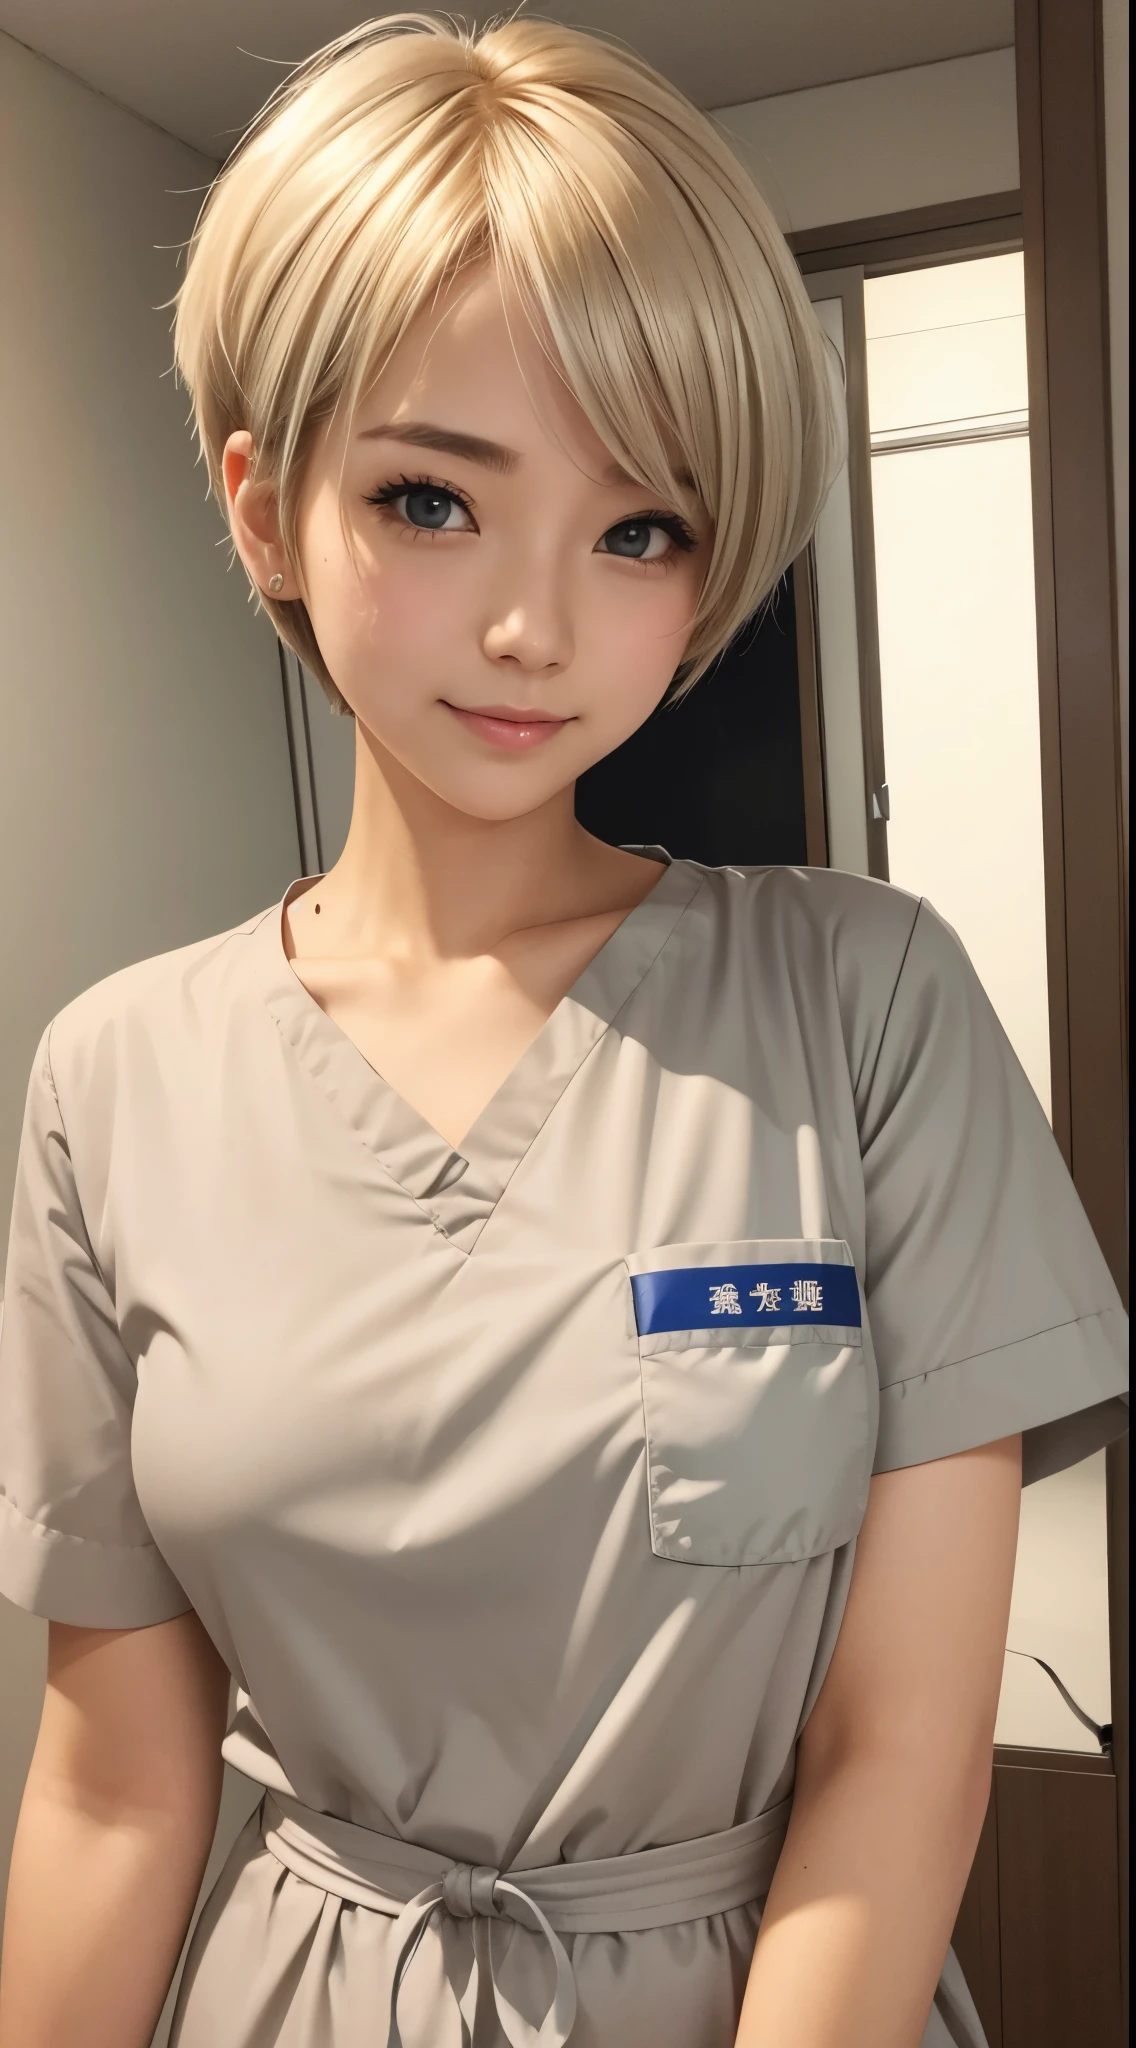 她是一位可爱的护士。金色的頭髮、銀色短髮、